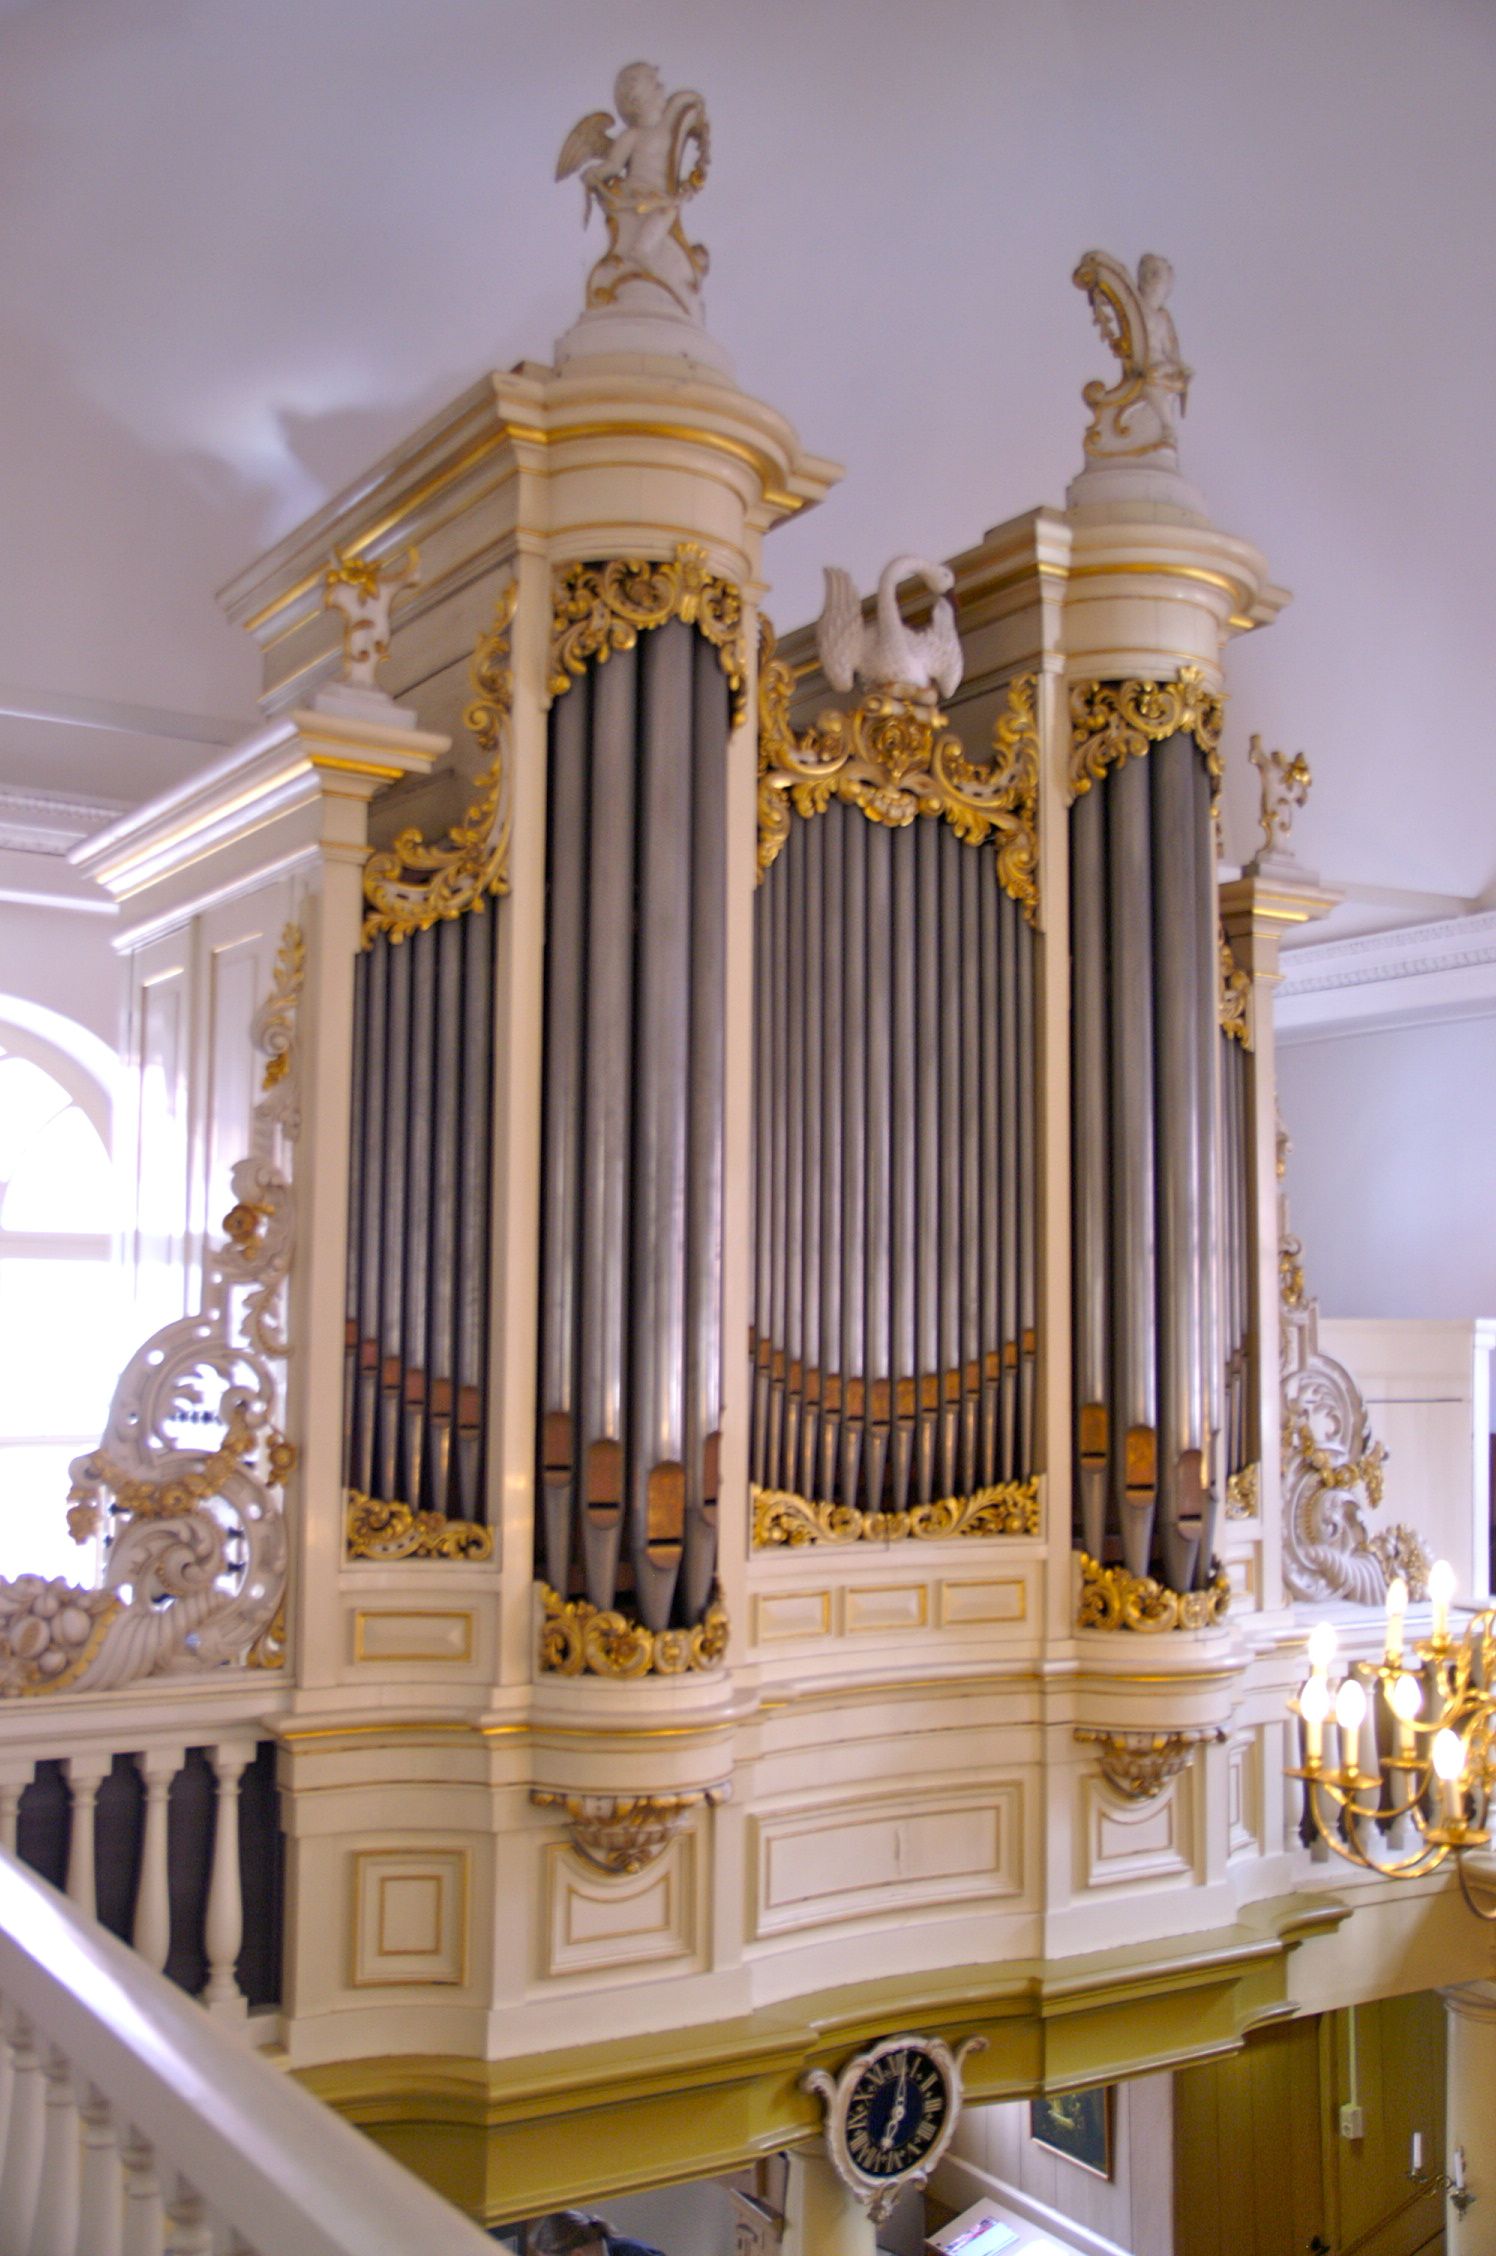 De orgelgeschiedenis